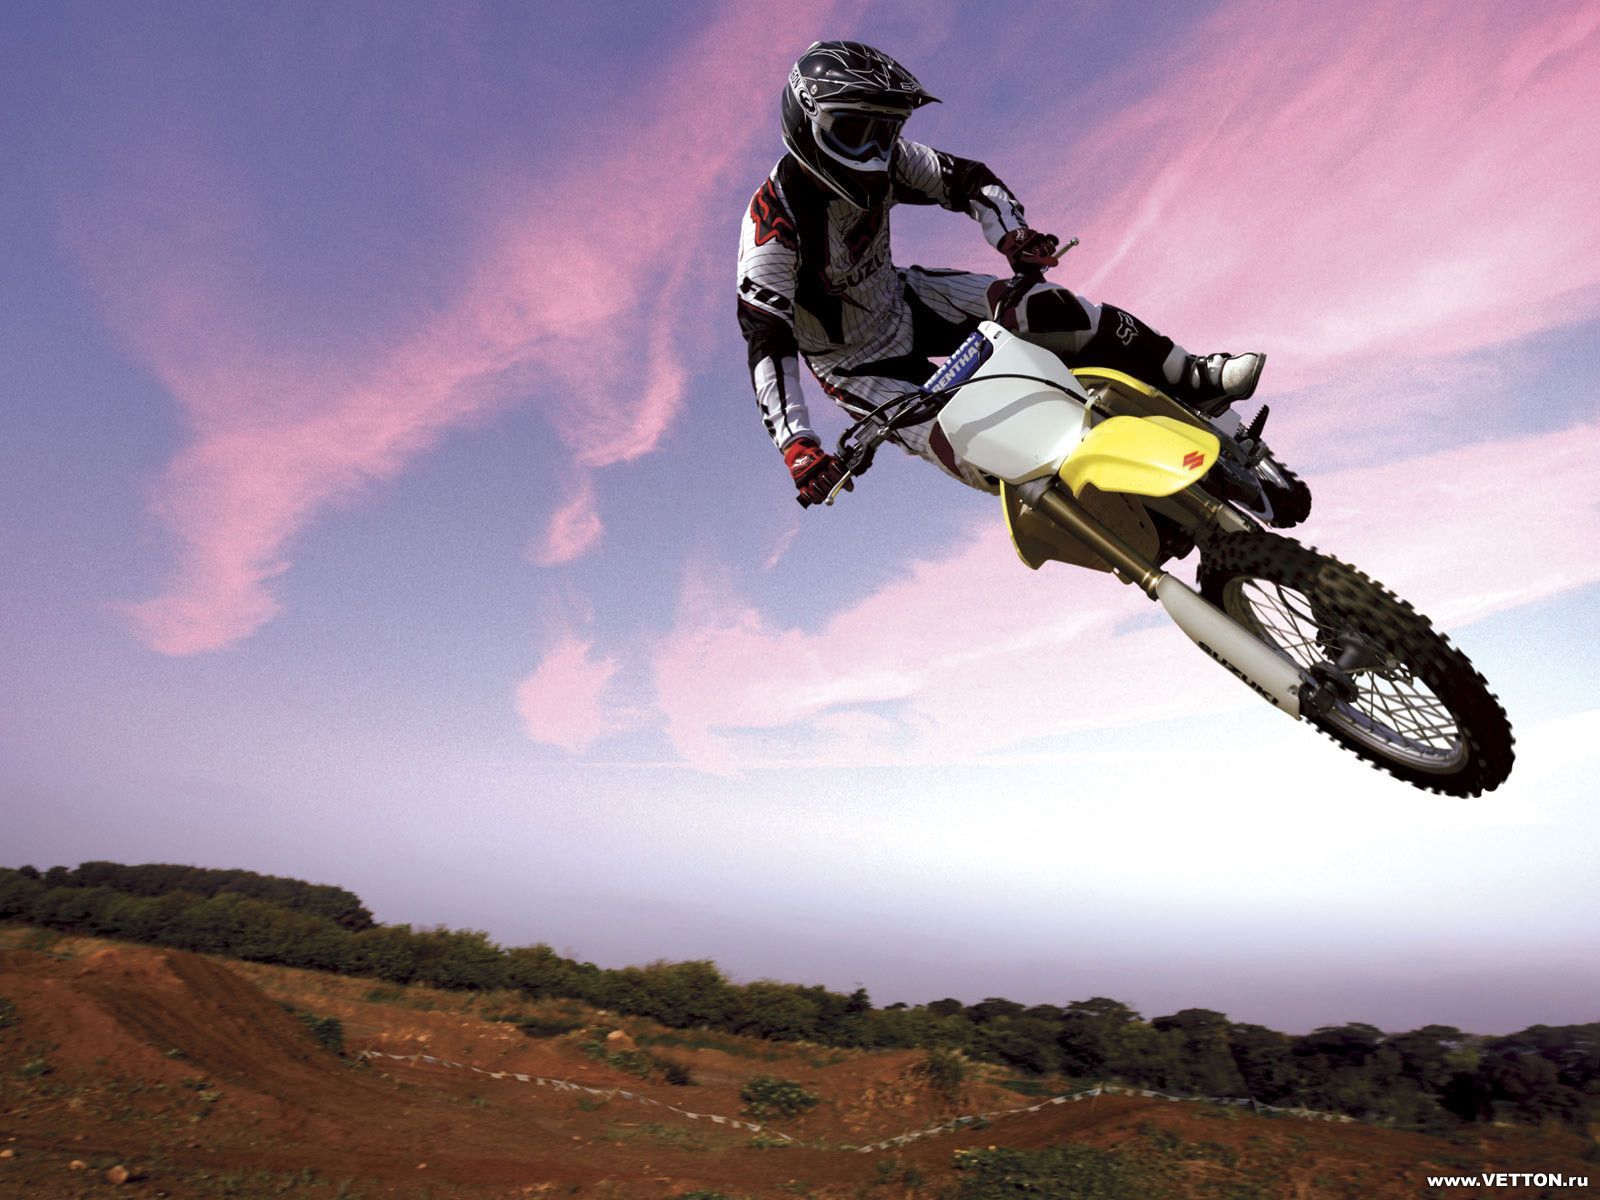 Best Motocross Desktop Images